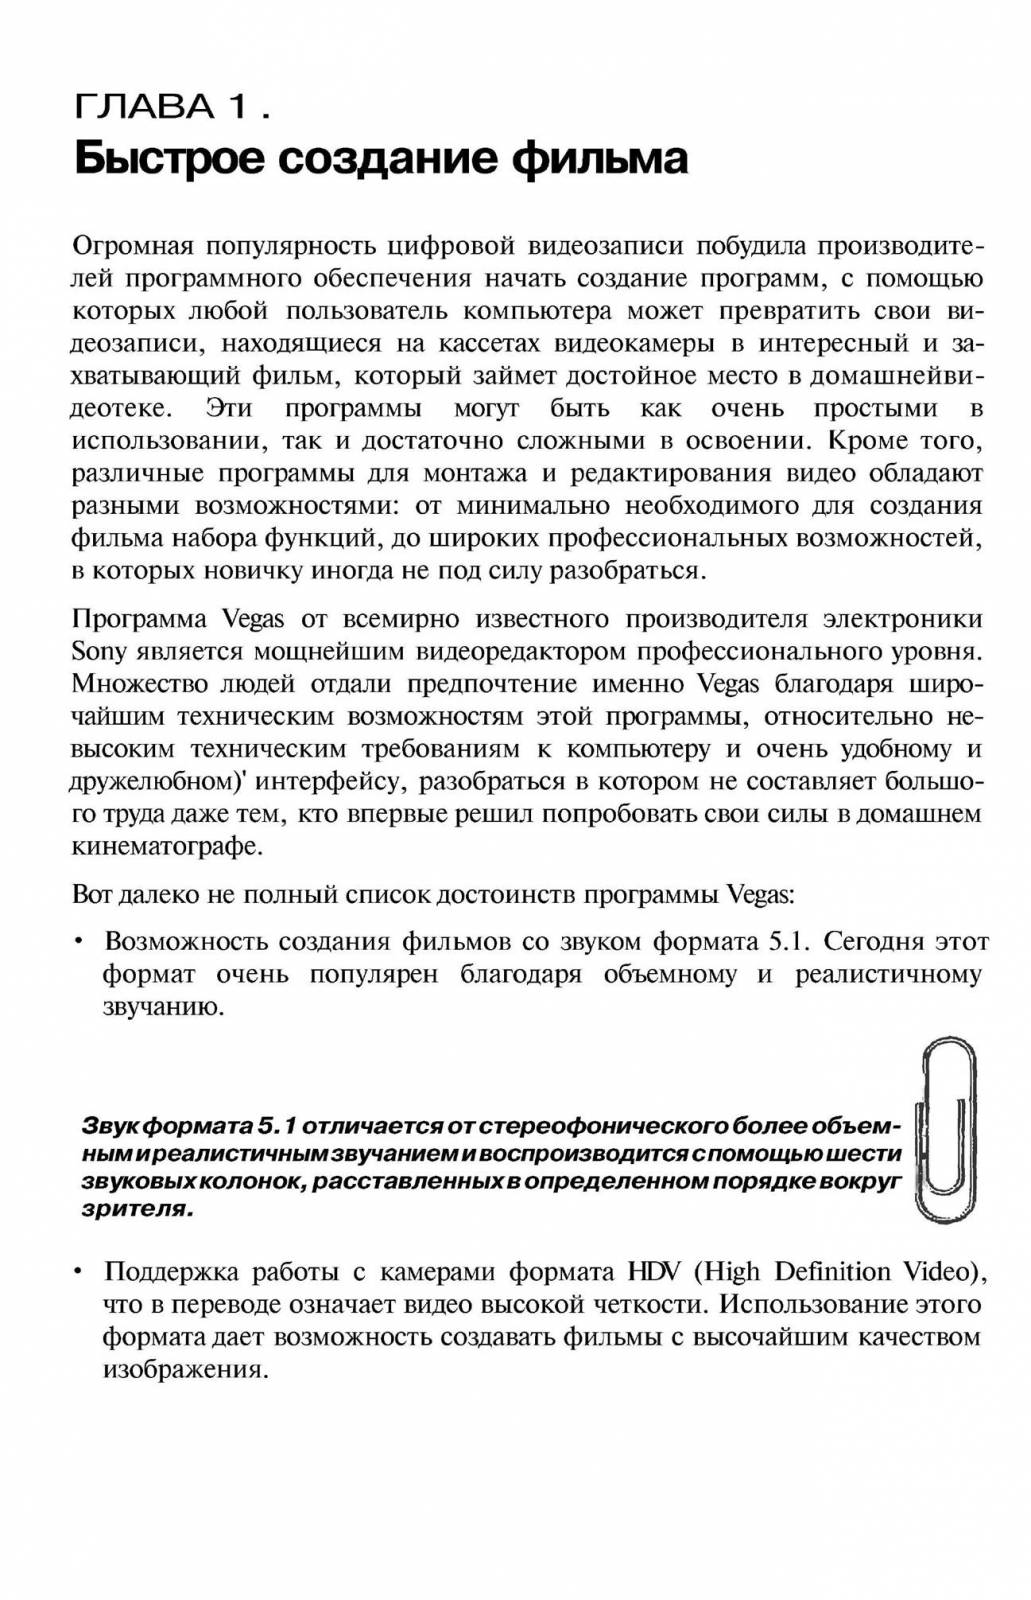 http://redaktori-uroki.3dn.ru/_ph/13/580105773.jpg